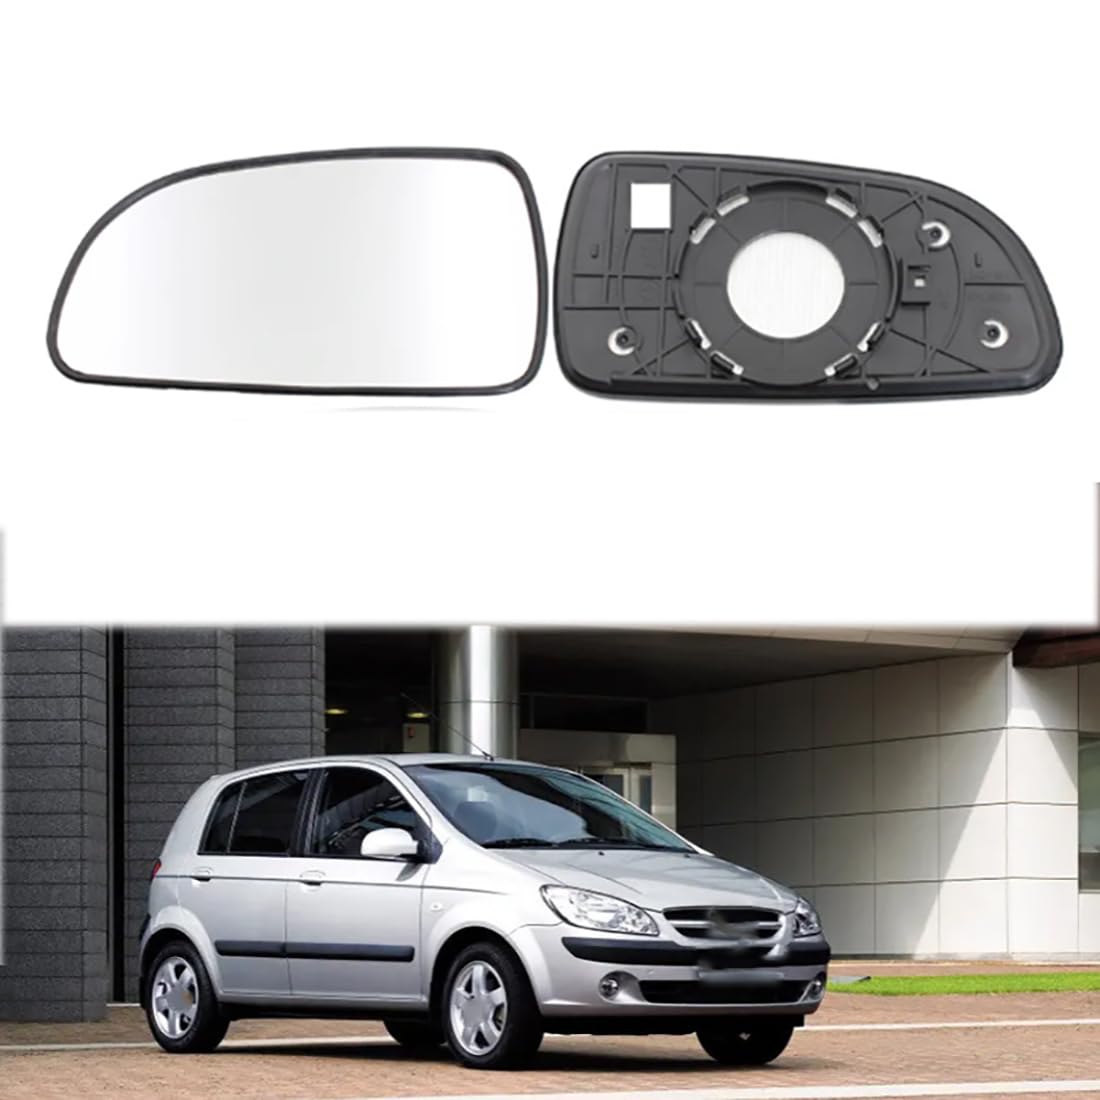 Austauschbarer Auto-Außenspiegel aus Beheizbarem Glas für Hyundai Getz 2003-2011,beheizbarer Rückspiegel für Fahrer und Beifahrer Links/rechts,C-right and left von YujieNB